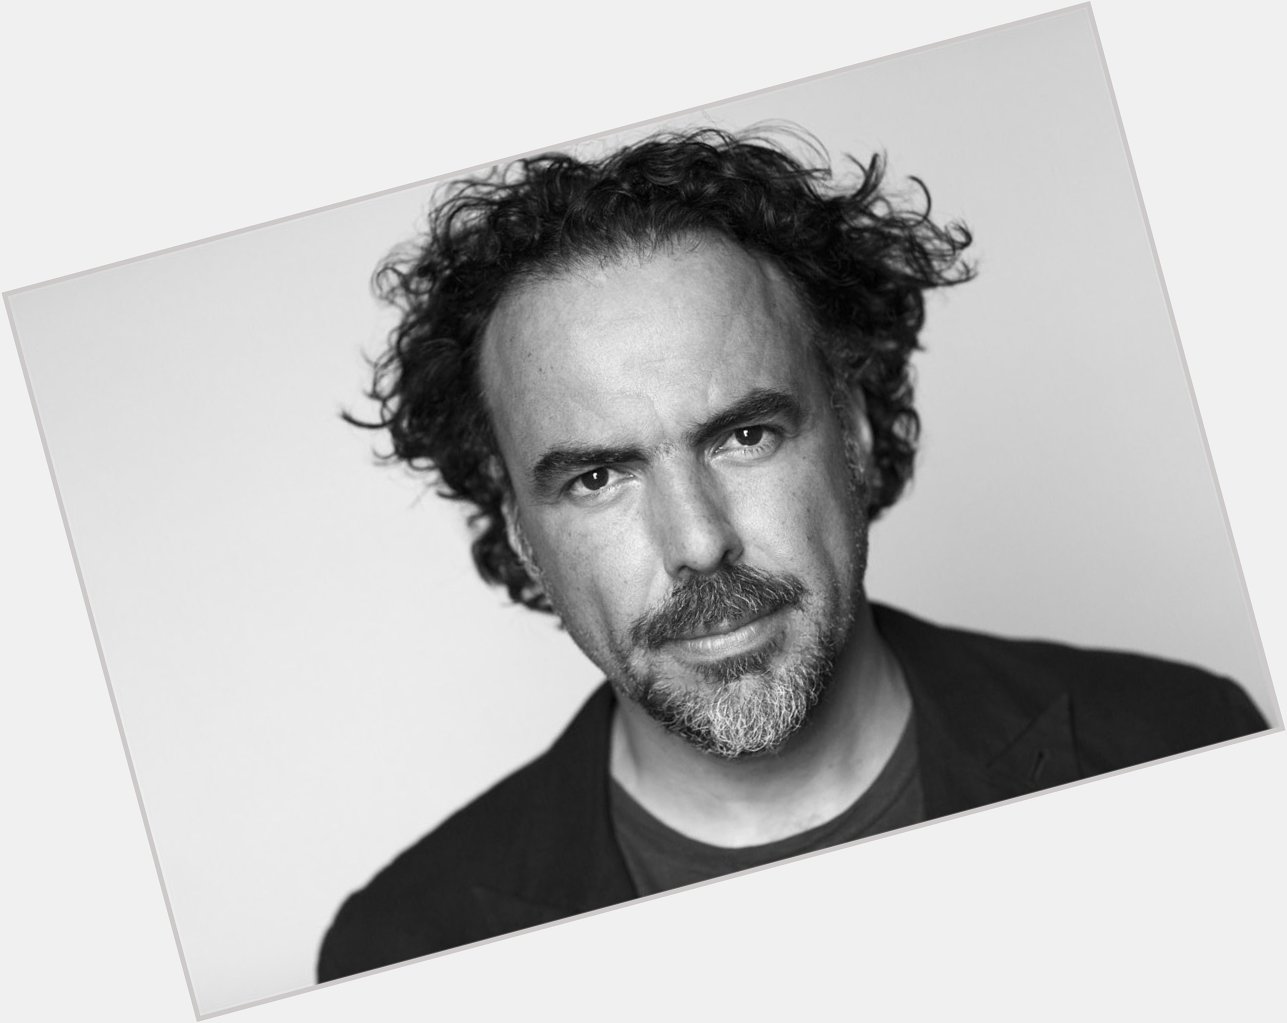    Wishing a very happy birthday to Alejandro González Iñárritu! 